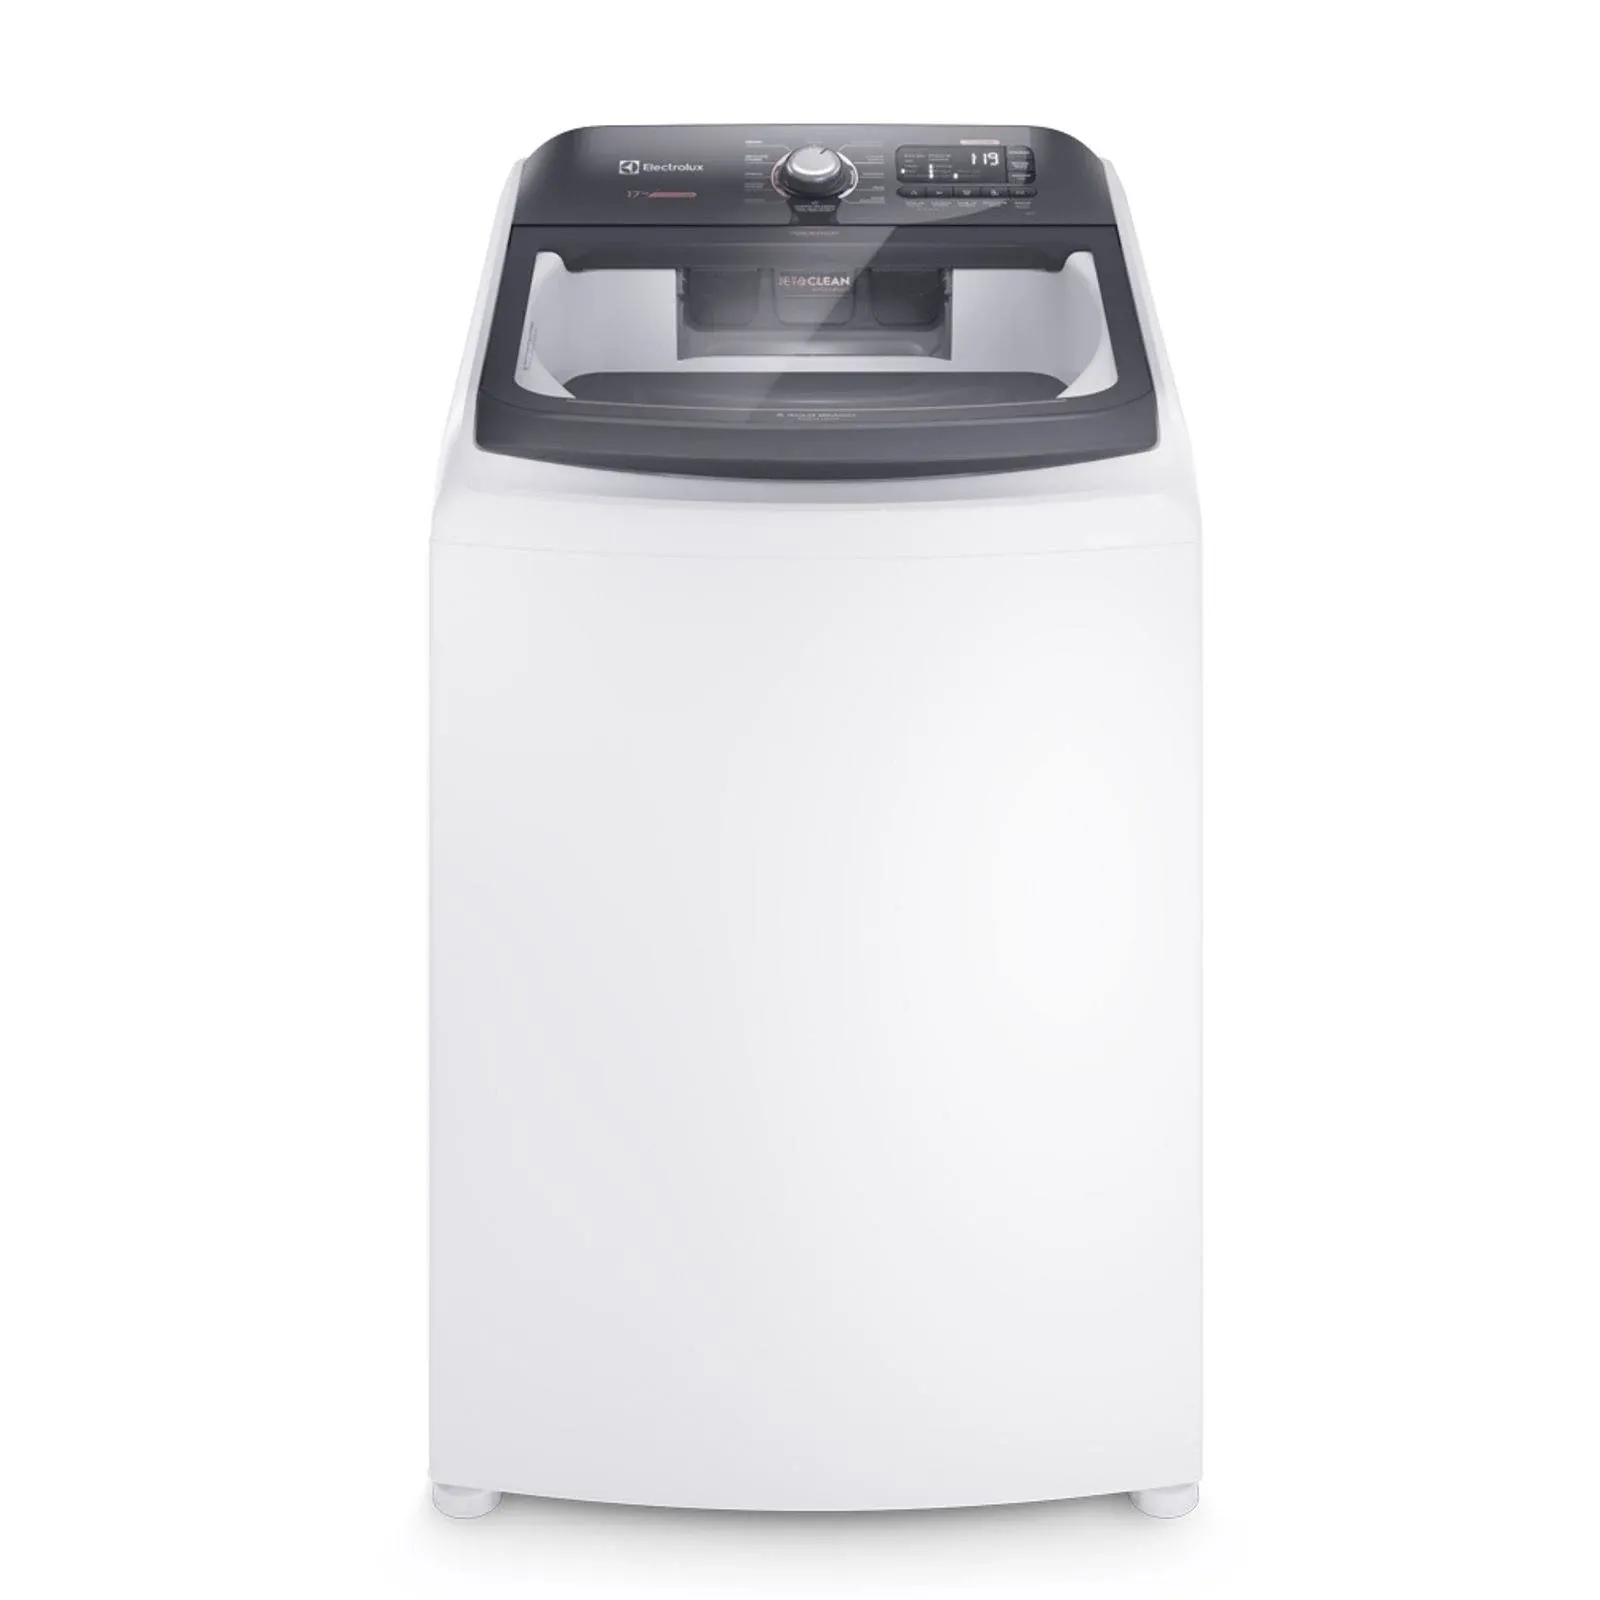 Imagem do produto Máquina De Lavar Electrolux Lec17 17kg Premium Care 220V